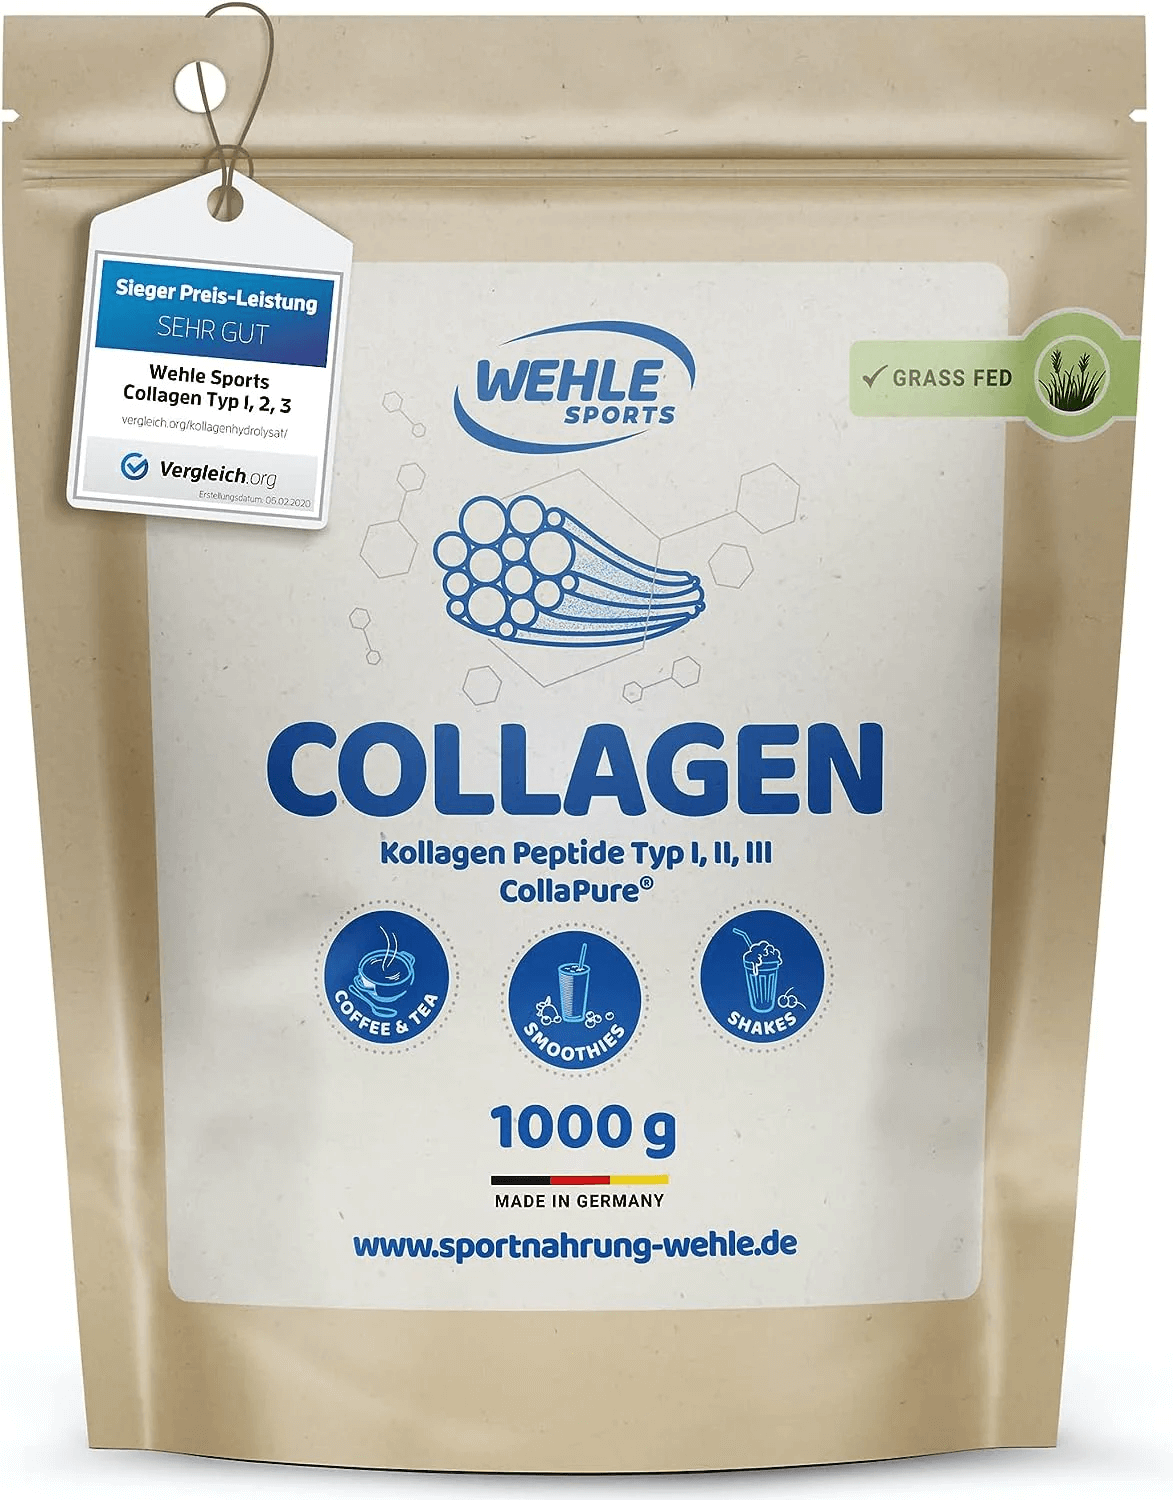 Wehle Sports Collagen Pulver | 1000g | Kollagen Hydrolysat | hohe biologische Verfügbarkeit | gluten- und laktosefrei